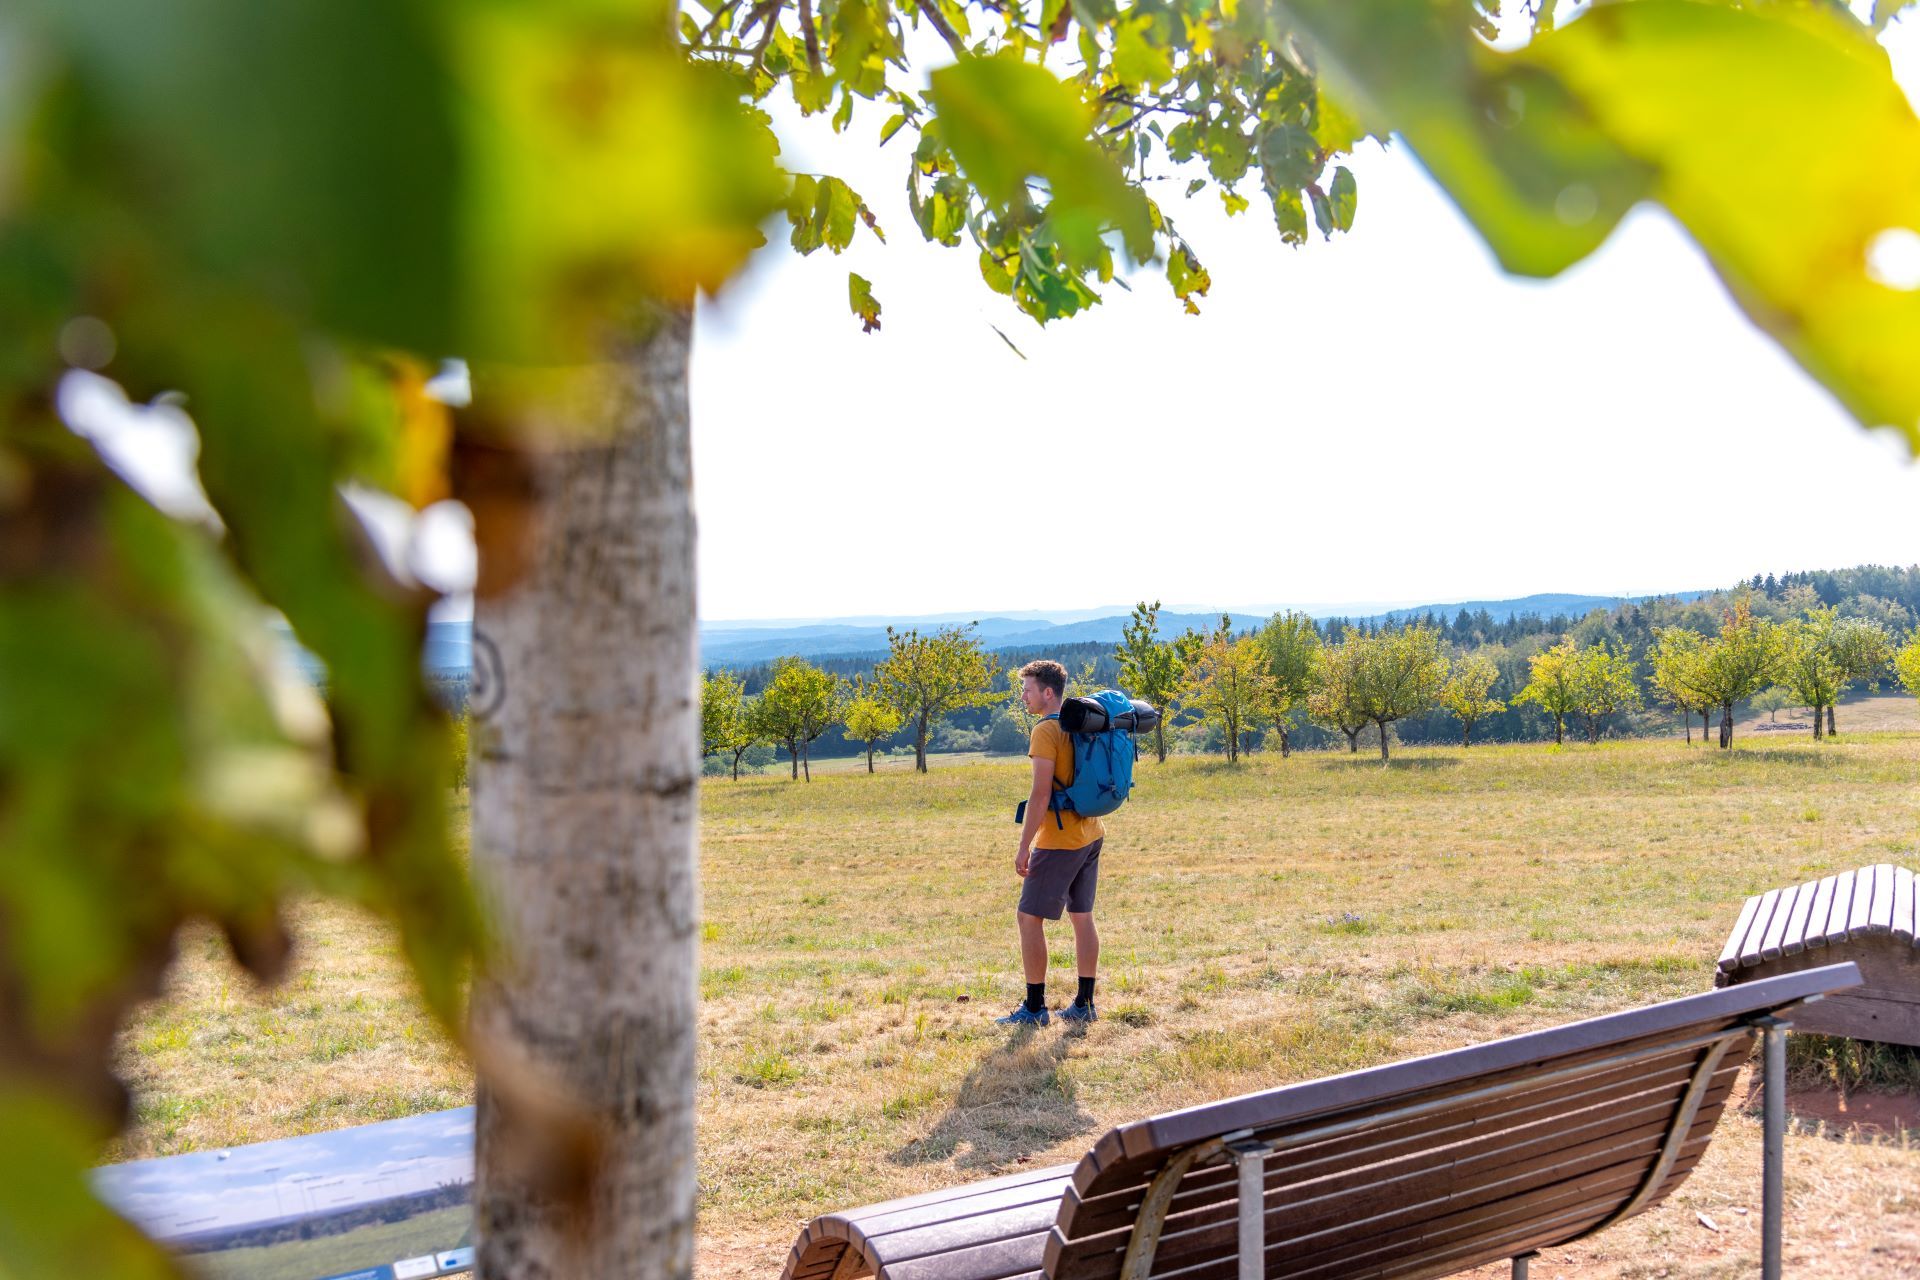 Ein Mann mit gelbem Hemd und Wanderausrüstung steht in einem Feld vor mehreren Bänken, auf denen sich Wanderer ausruhen können. Im Vordergrund blockiert ein Baum die linke Seite des Bildes.